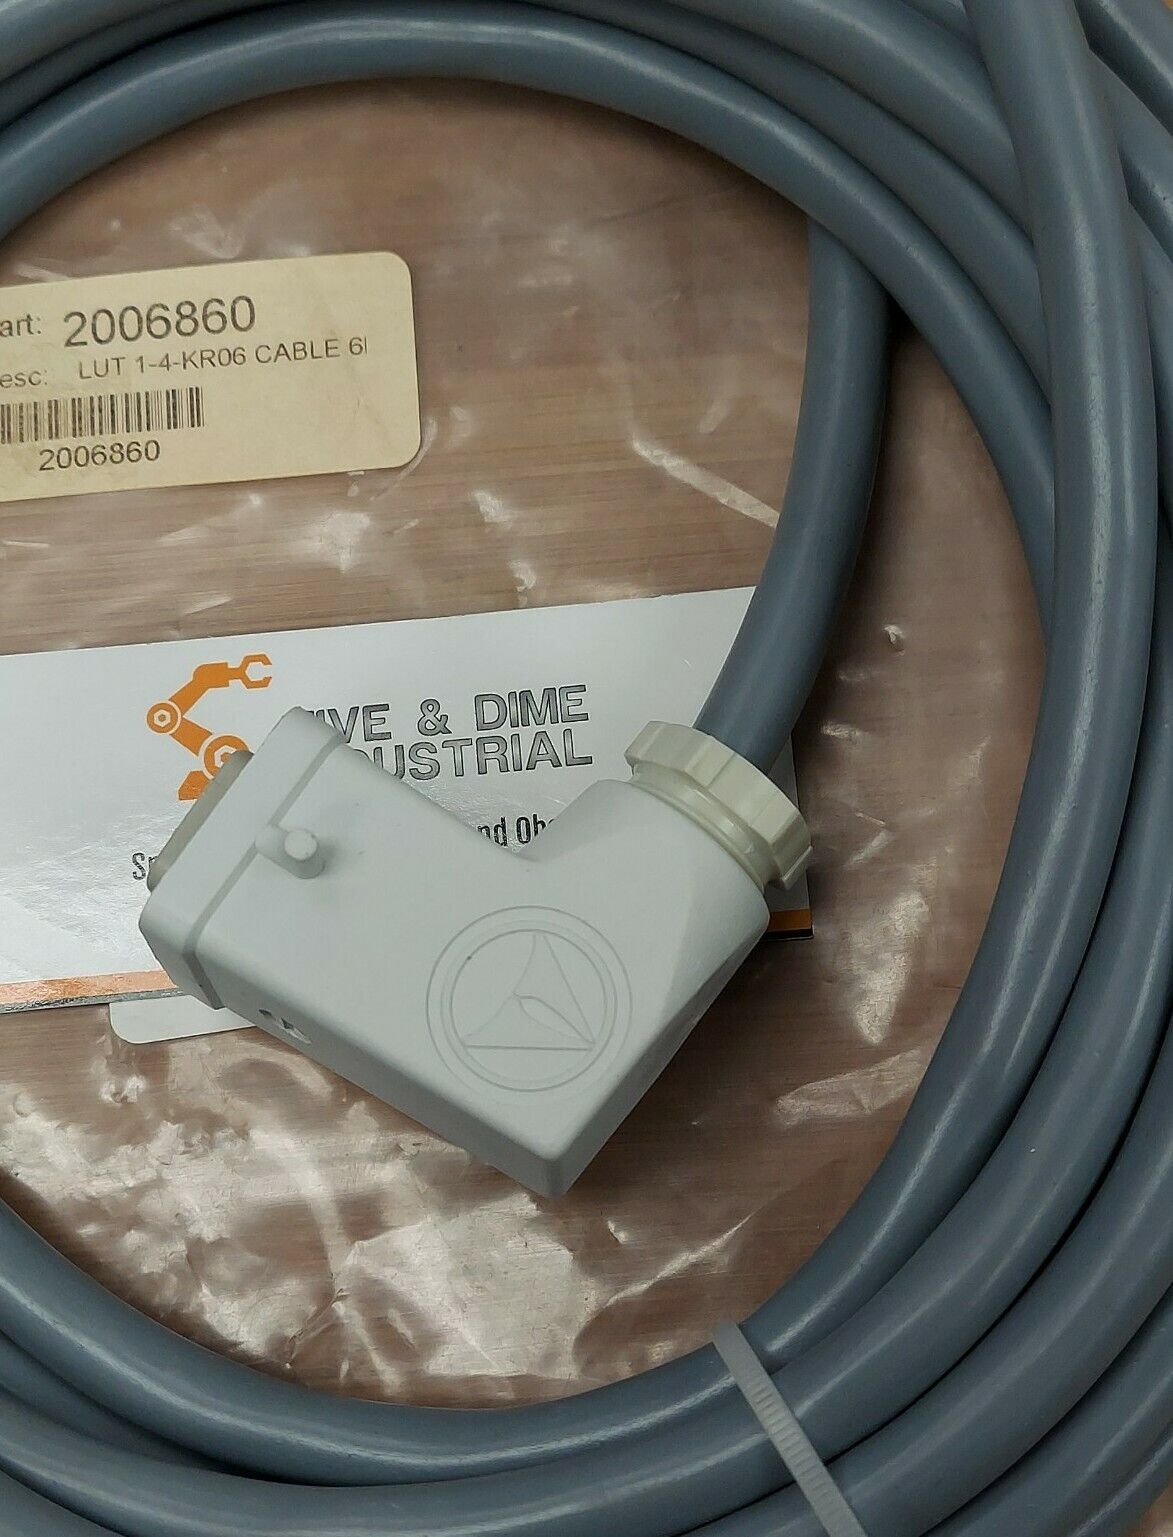 Sick Lut 1-4-KR06 New Cable 6M for Lut 1-4 PN# 2006860 (CBL100)